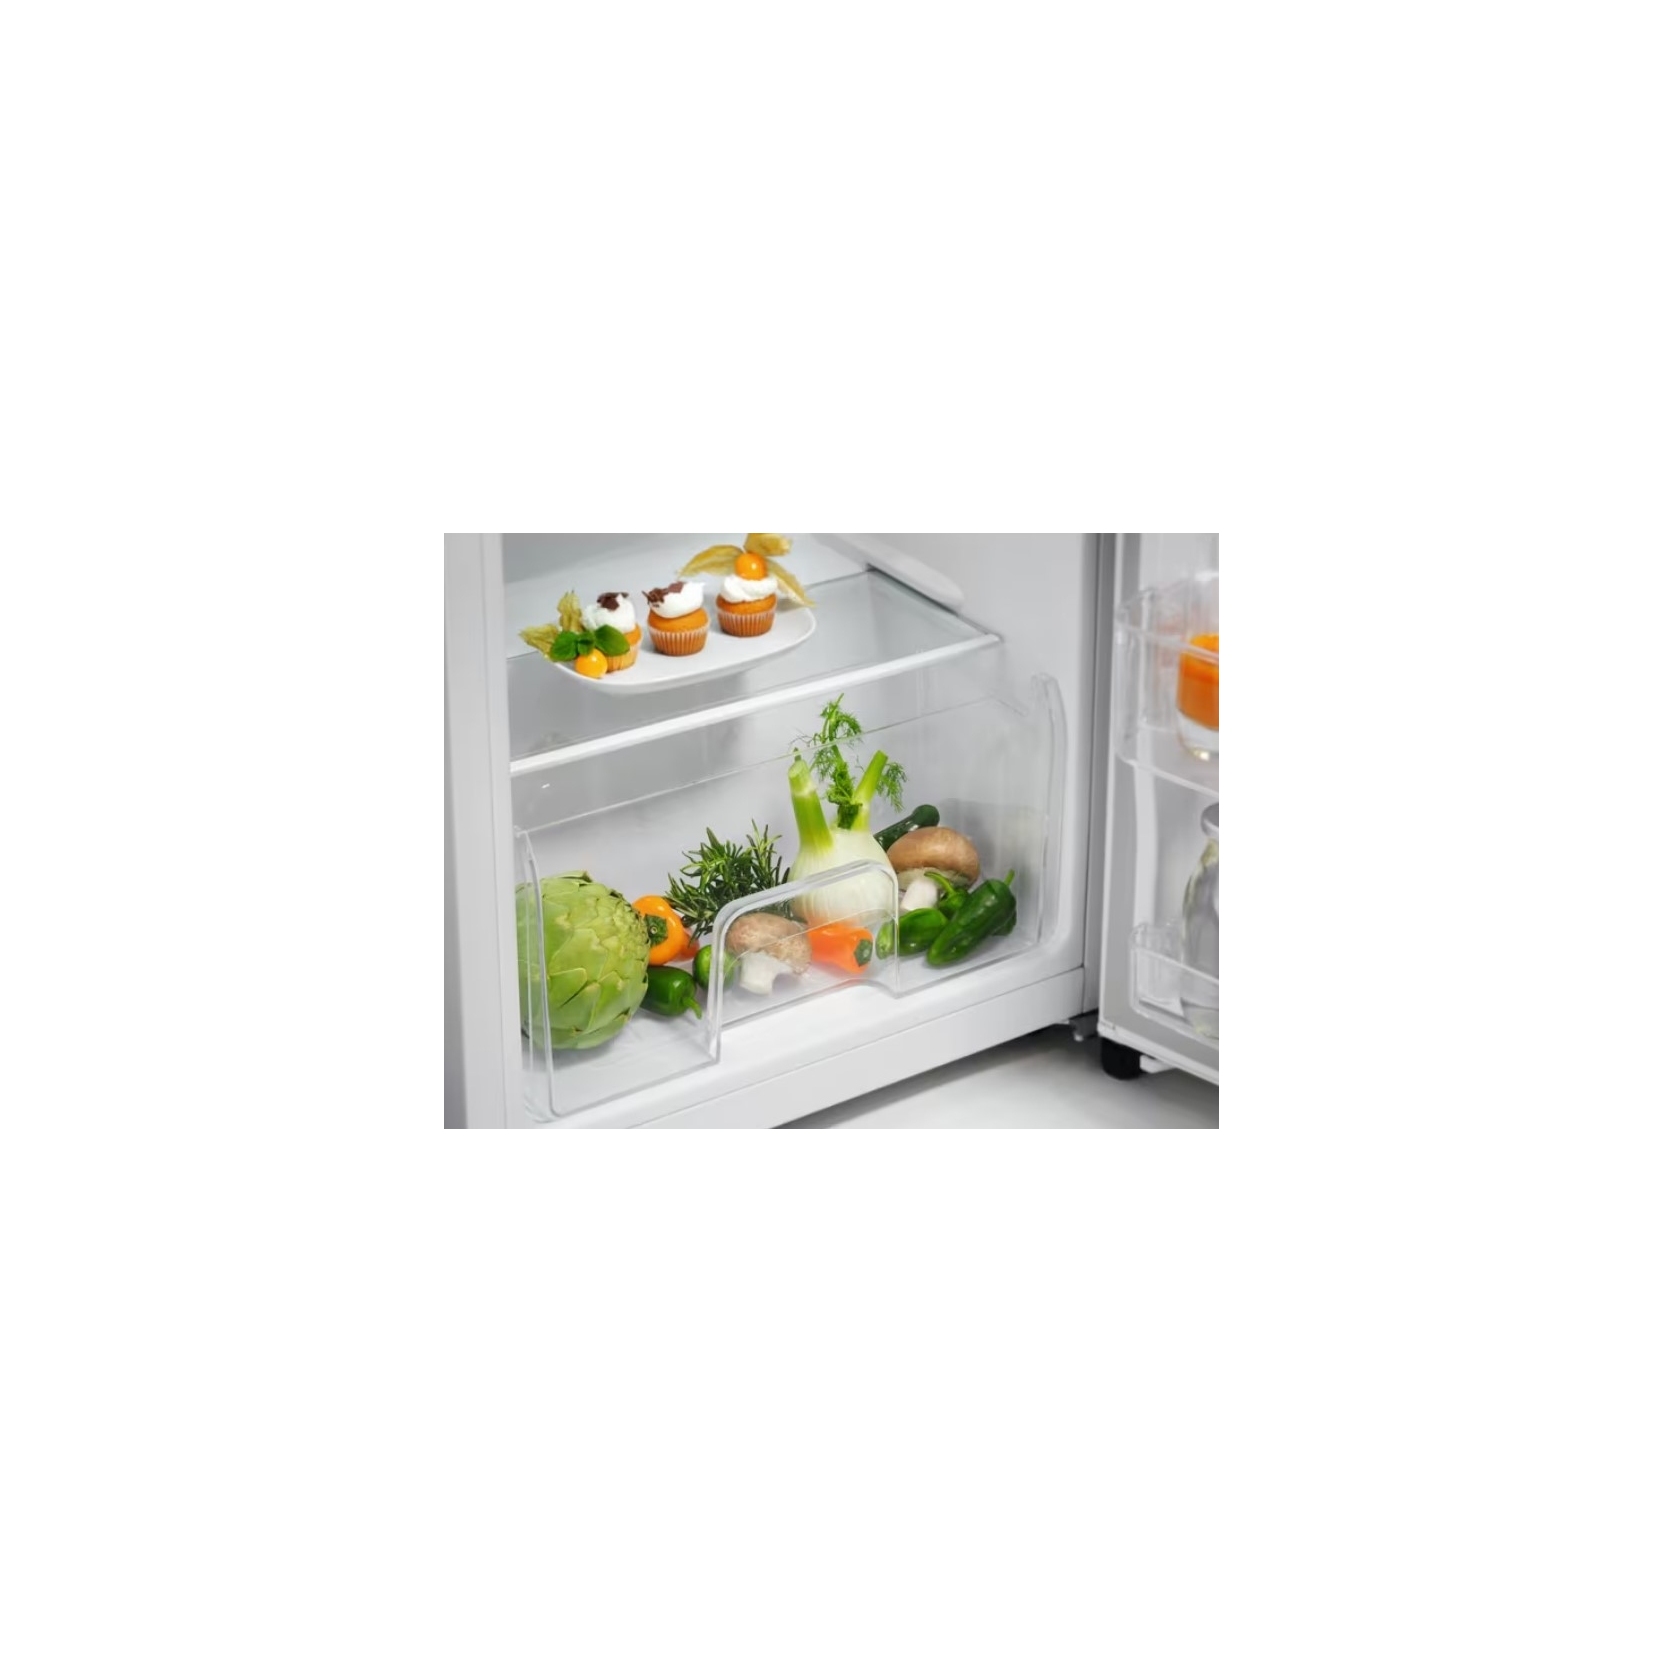 ELECTROLUX réfrigérateur-congélateur double porte LTB1AF14W0 Série 500  Coldsense - Amoble Design